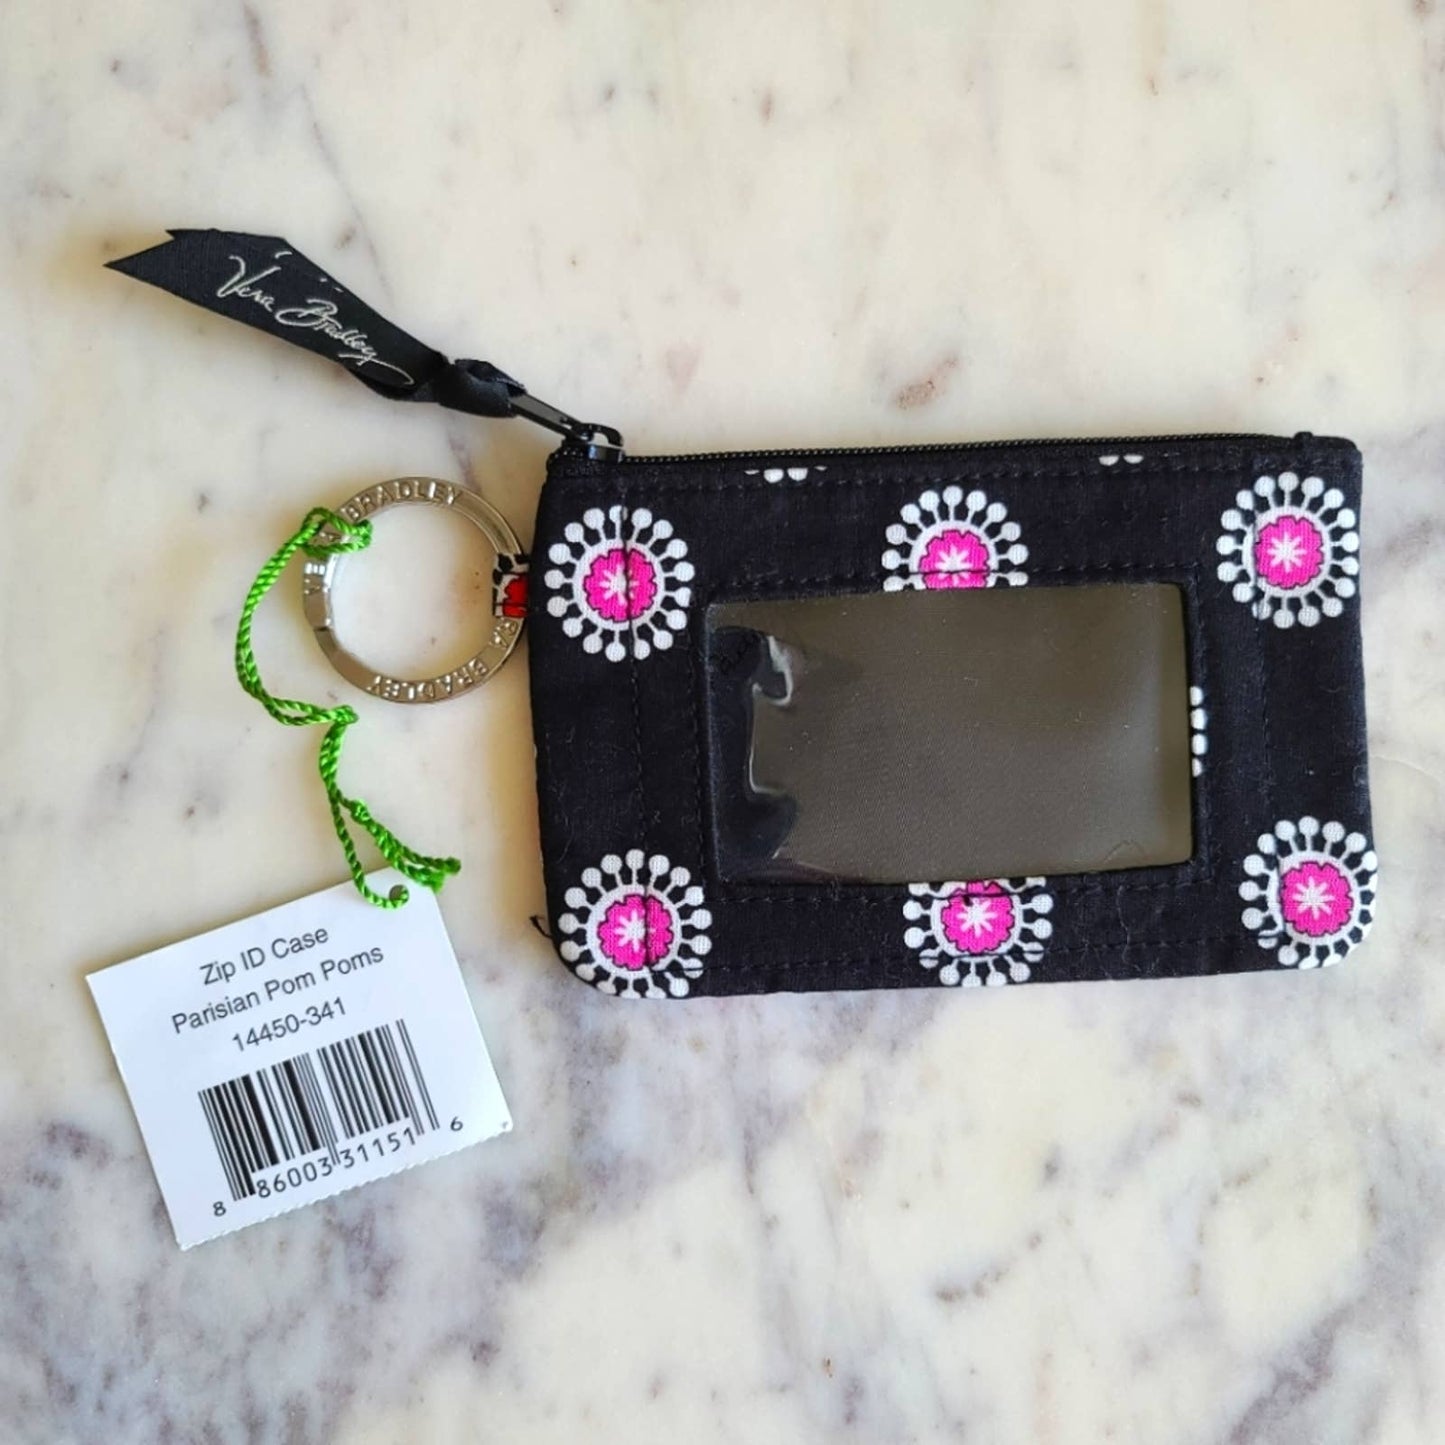 NWT Vera Bradley Black Parisian Pom Poms Print Zip ID Case Keychain Pouch